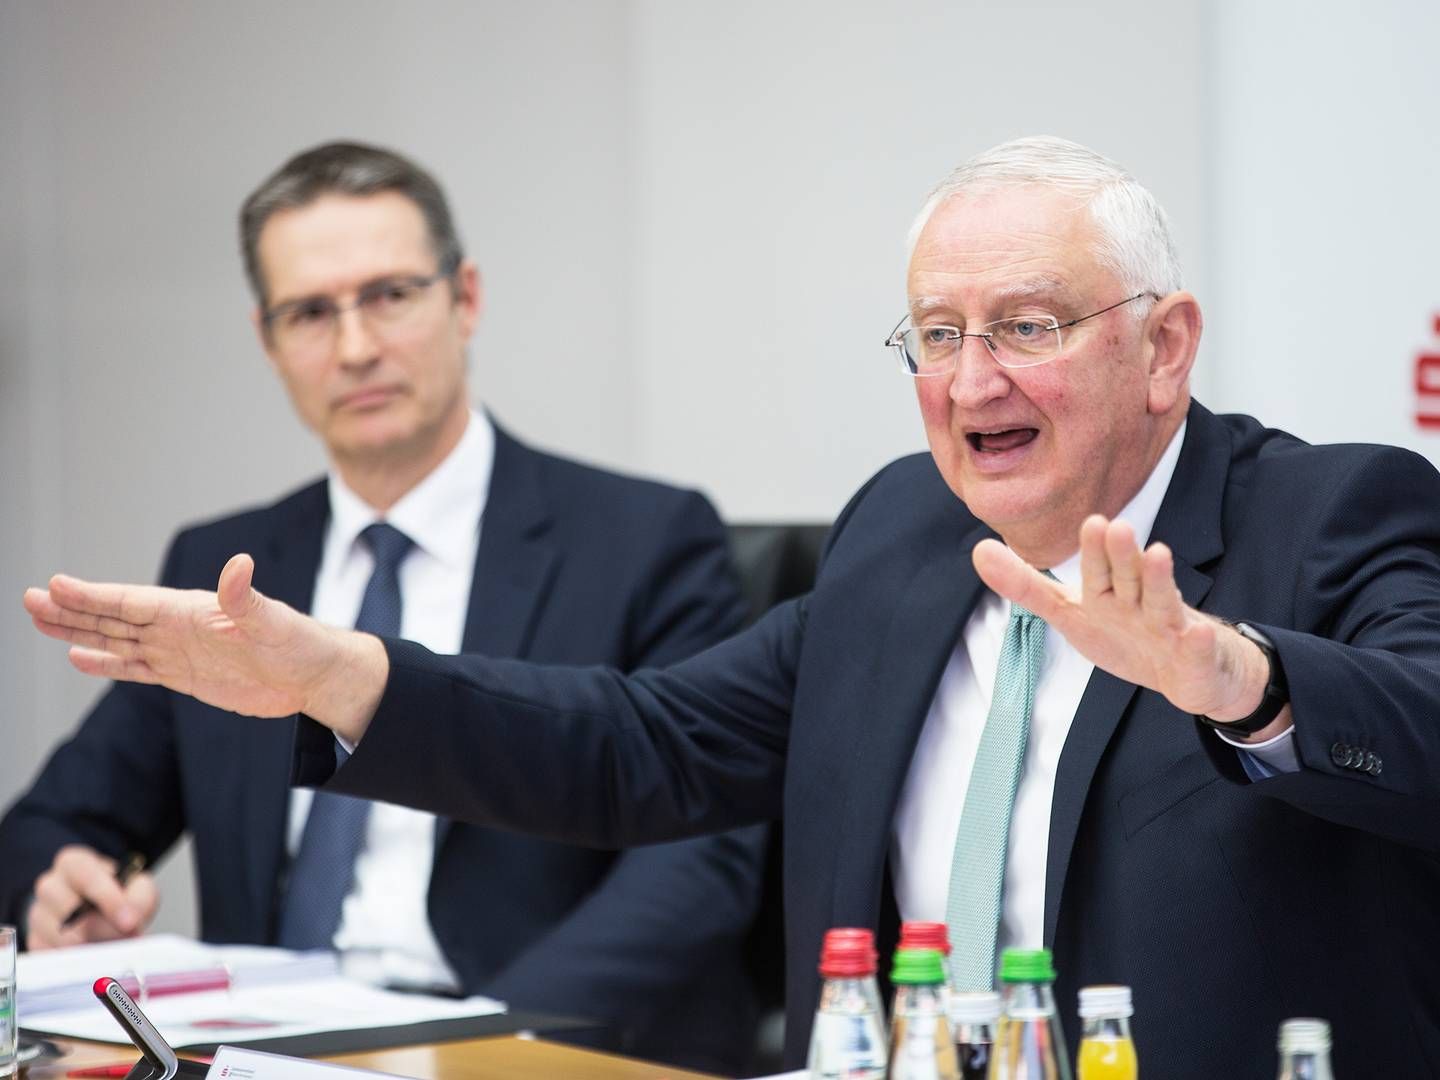 Sparkassenpräsident Peter Schneider (r.) und Verbandsgeschäftsführer Ralf Bäuerle. | Foto: SVBW / Ines Rudel